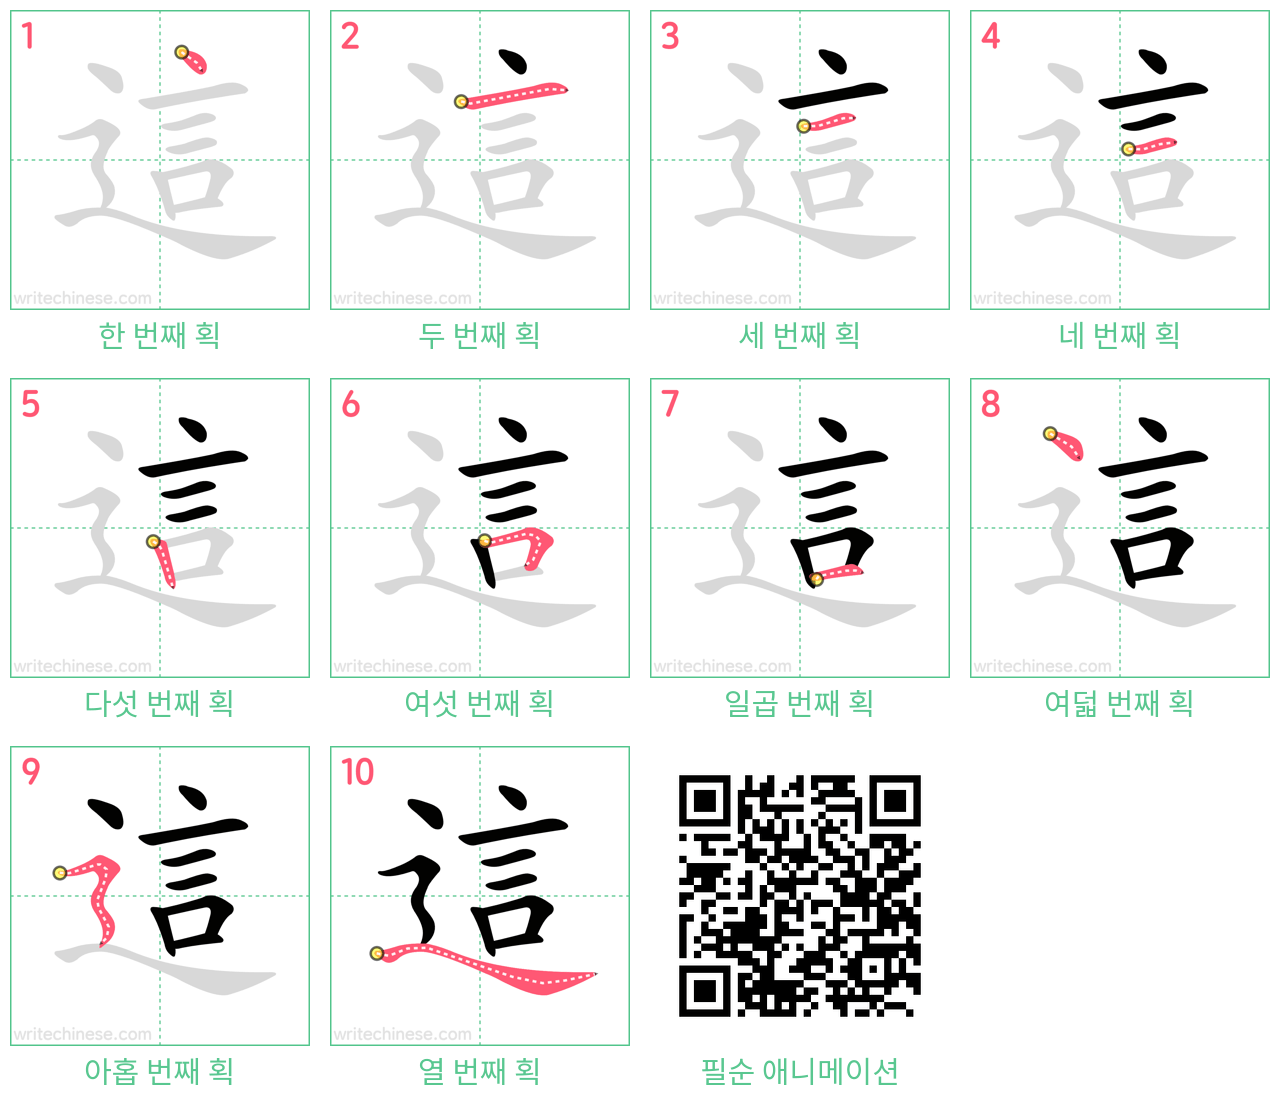 這 step-by-step stroke order diagrams